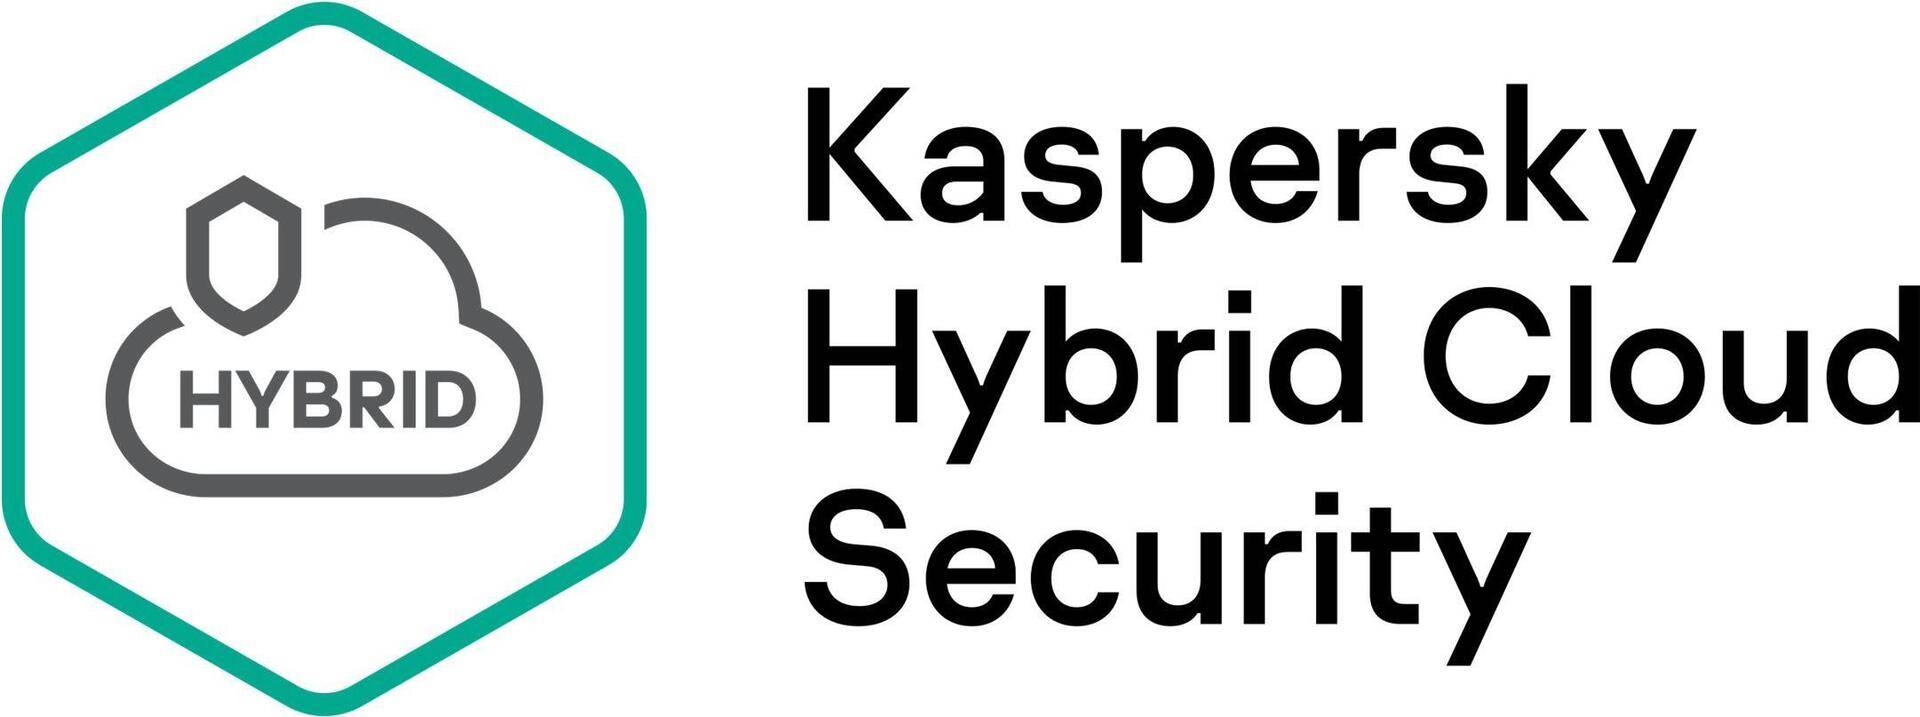 Kaspersky Hybrid Cloud Security - Erneuerung der Abonnement-Lizenz (3 Jahre) - 1 CPU - Volumen - Stufe T (250-499) - Europa (KL4554XATTR) von Kaspersky Lab